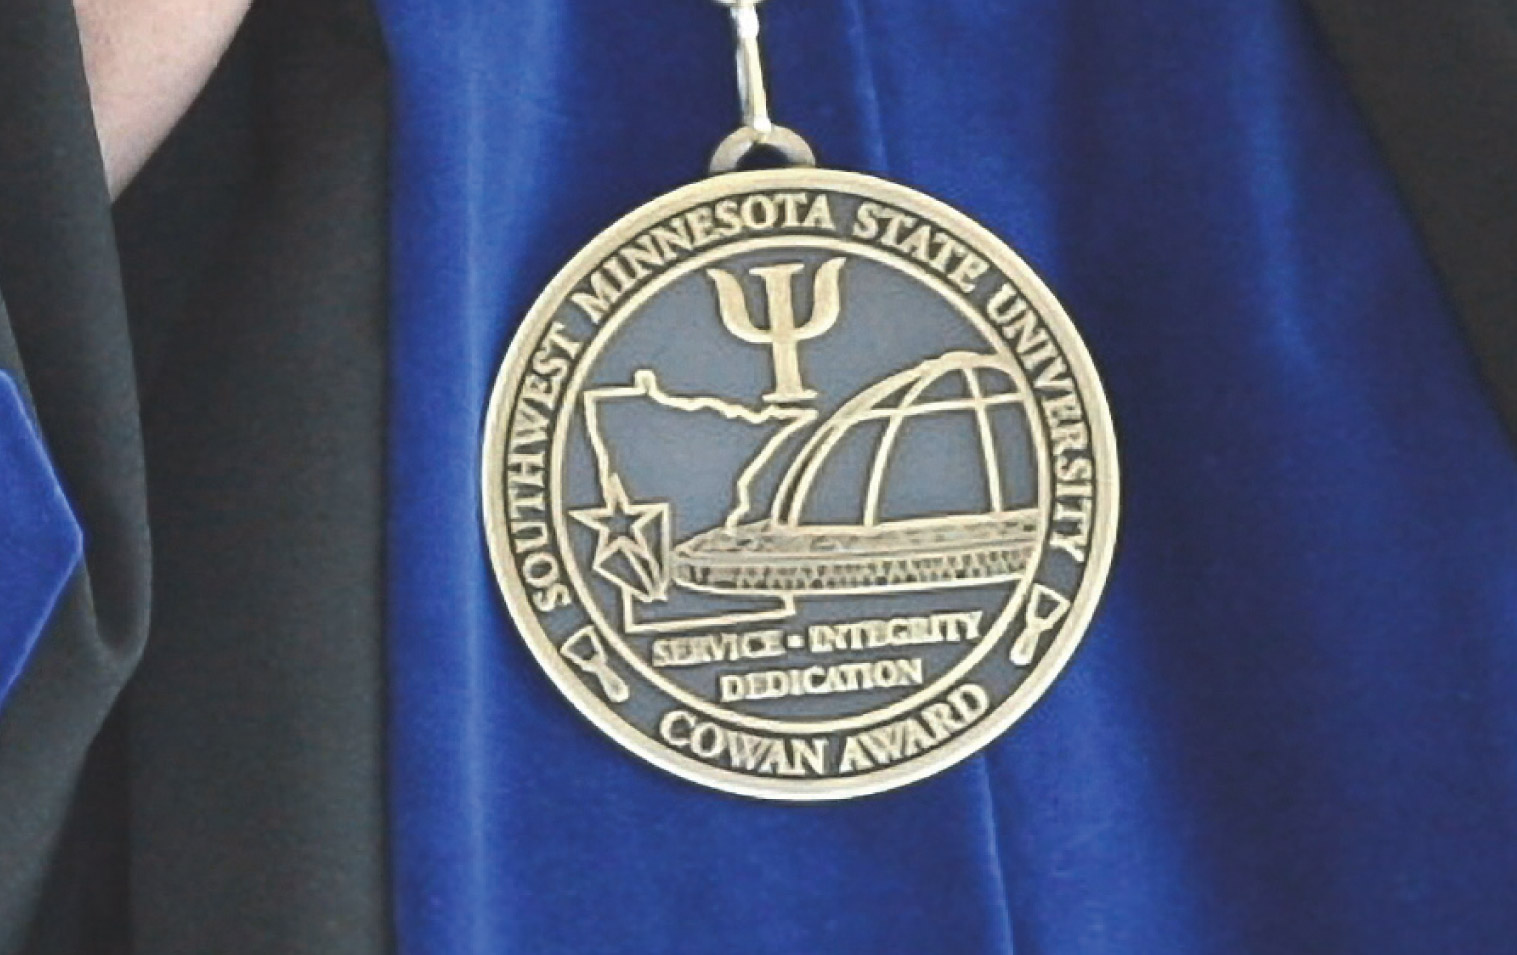 The Cowan Award Medal